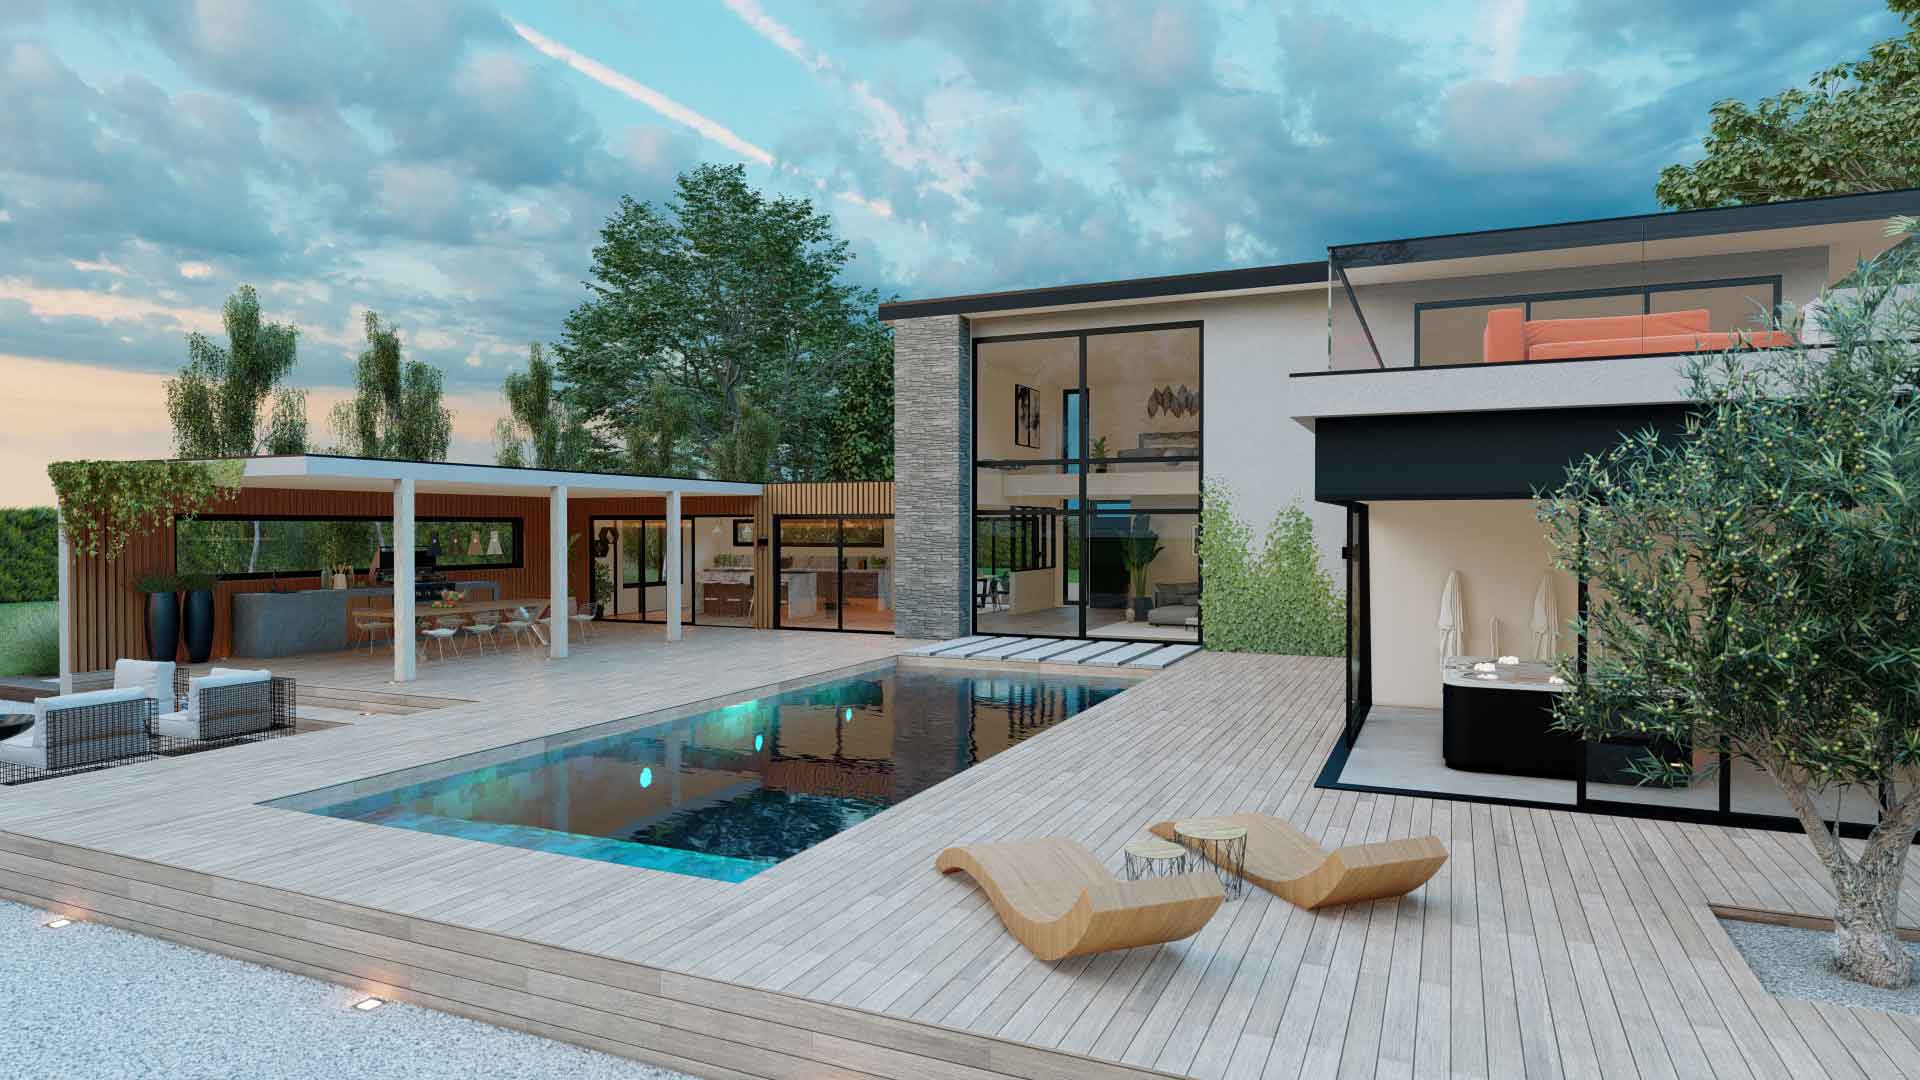 Constructeurs-maisons-l4m-production-image-3d-constructions-Belon-terrasse-piscine